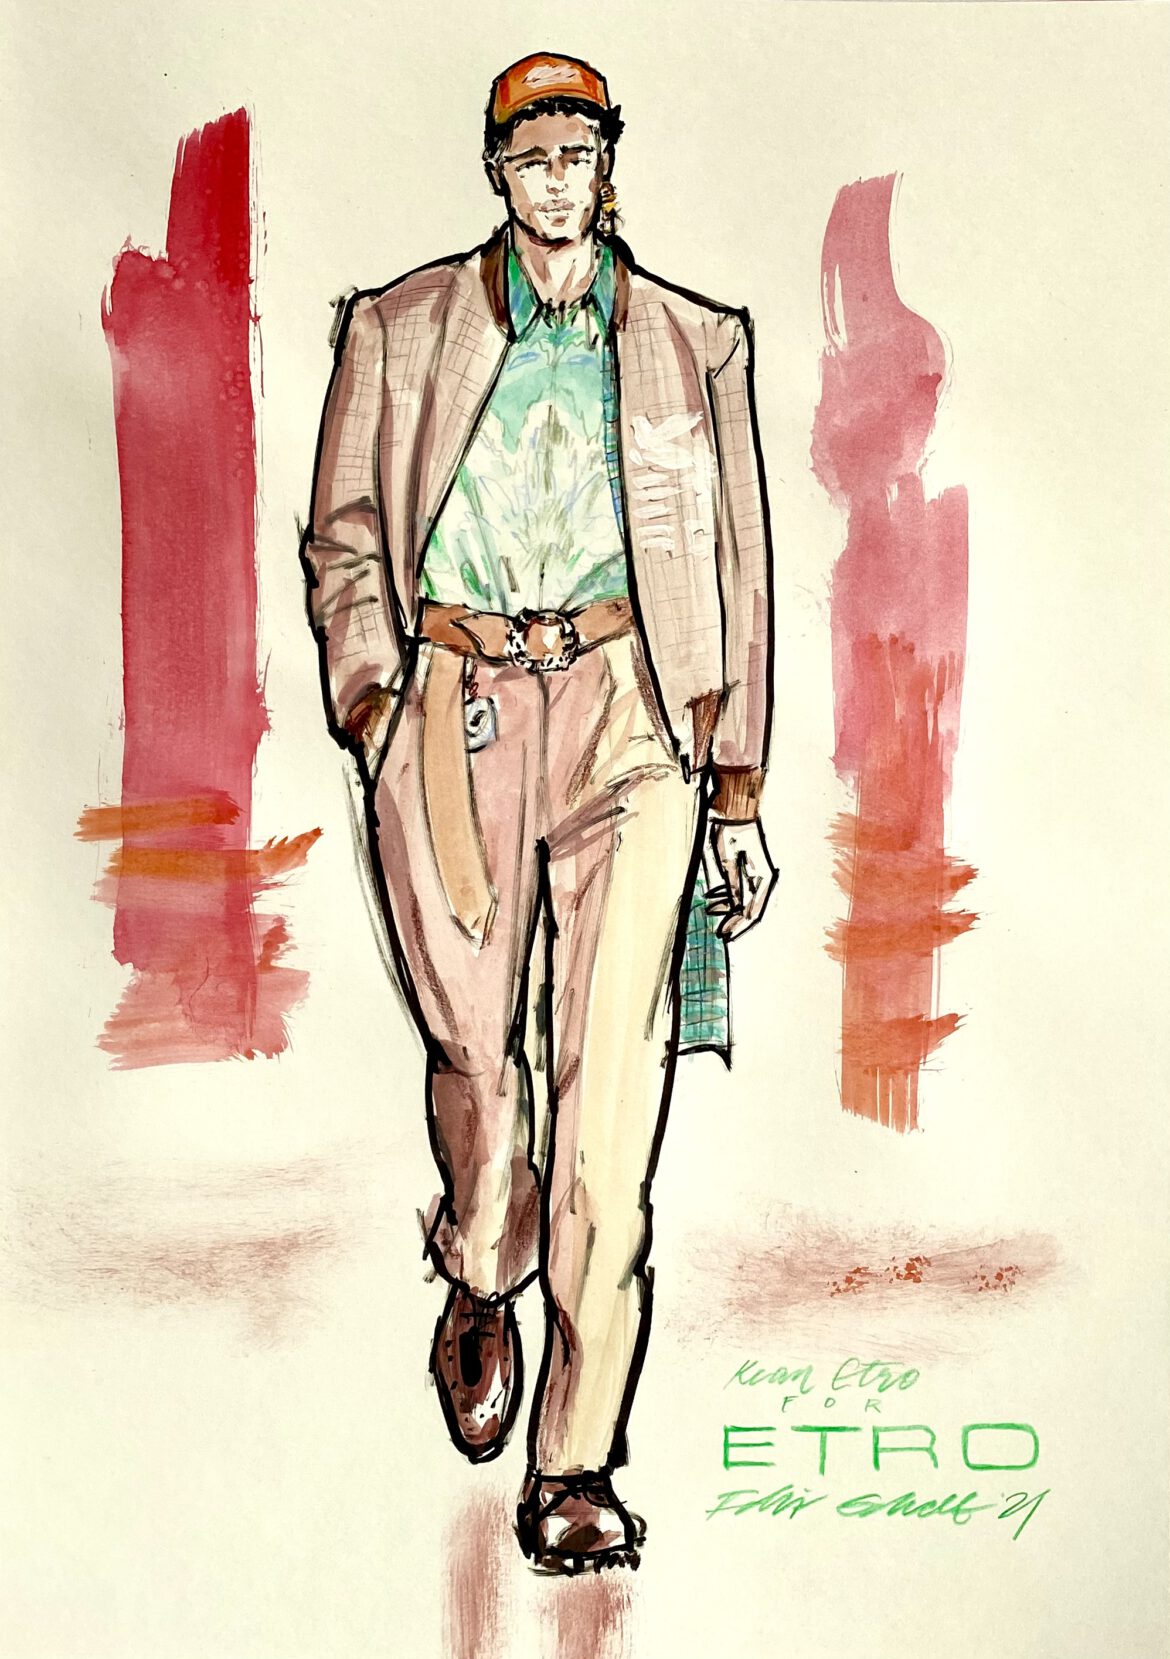 Modeillustration eines männlichen models mit mauvefarbenem Anzug